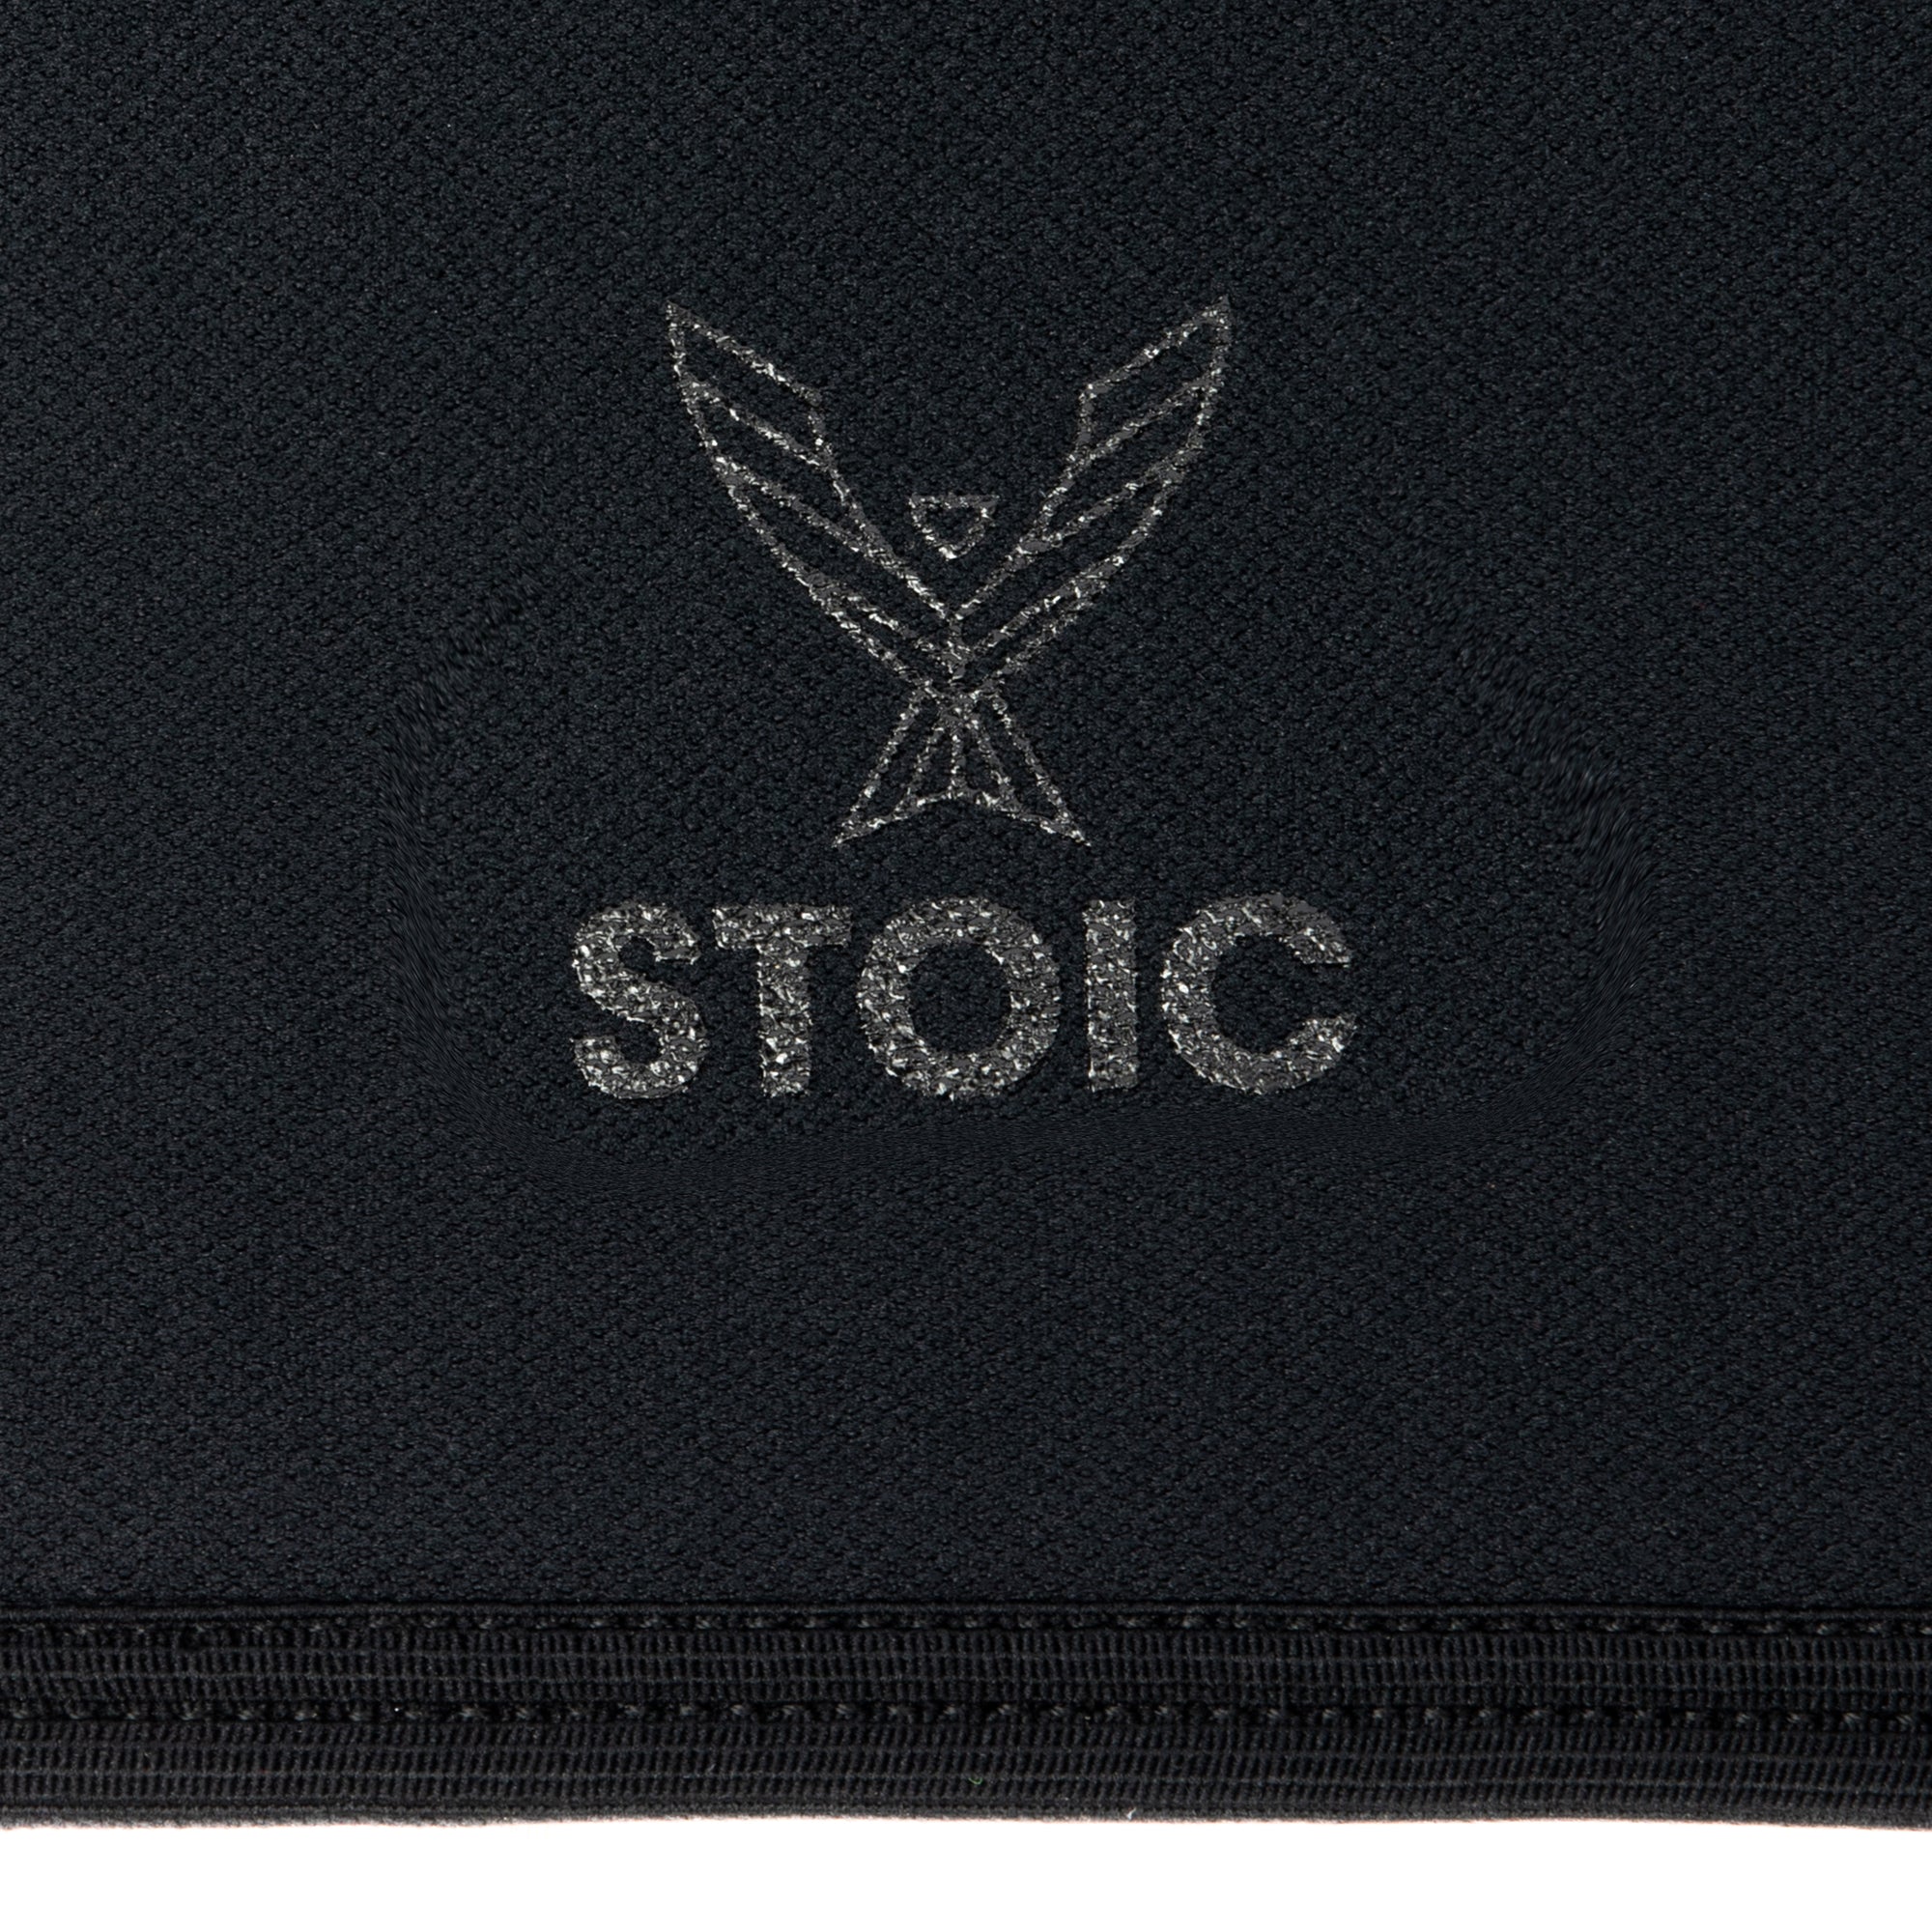 Stoic Knee Sleeves - Black Label